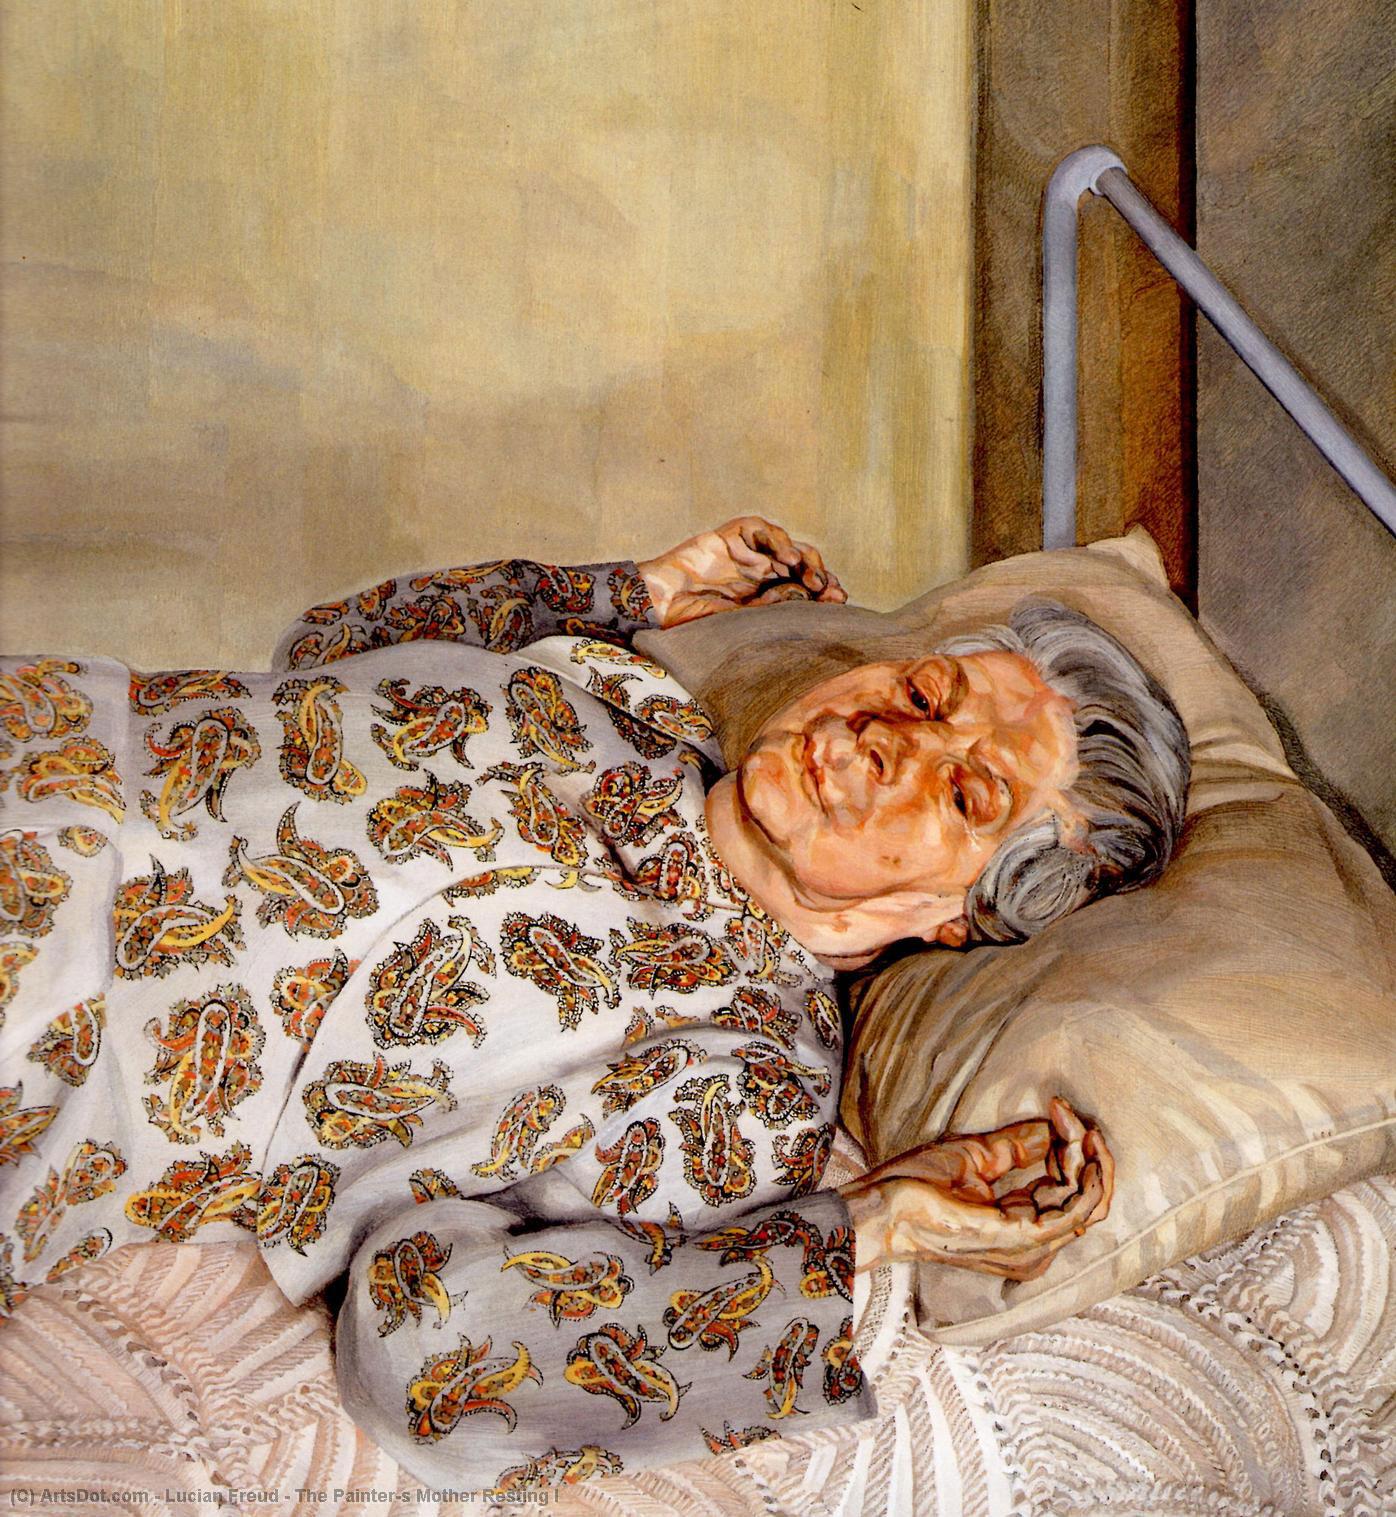 Wikoo.org - موسوعة الفنون الجميلة - اللوحة، العمل الفني Lucian Freud - The Painter's Mother Resting I